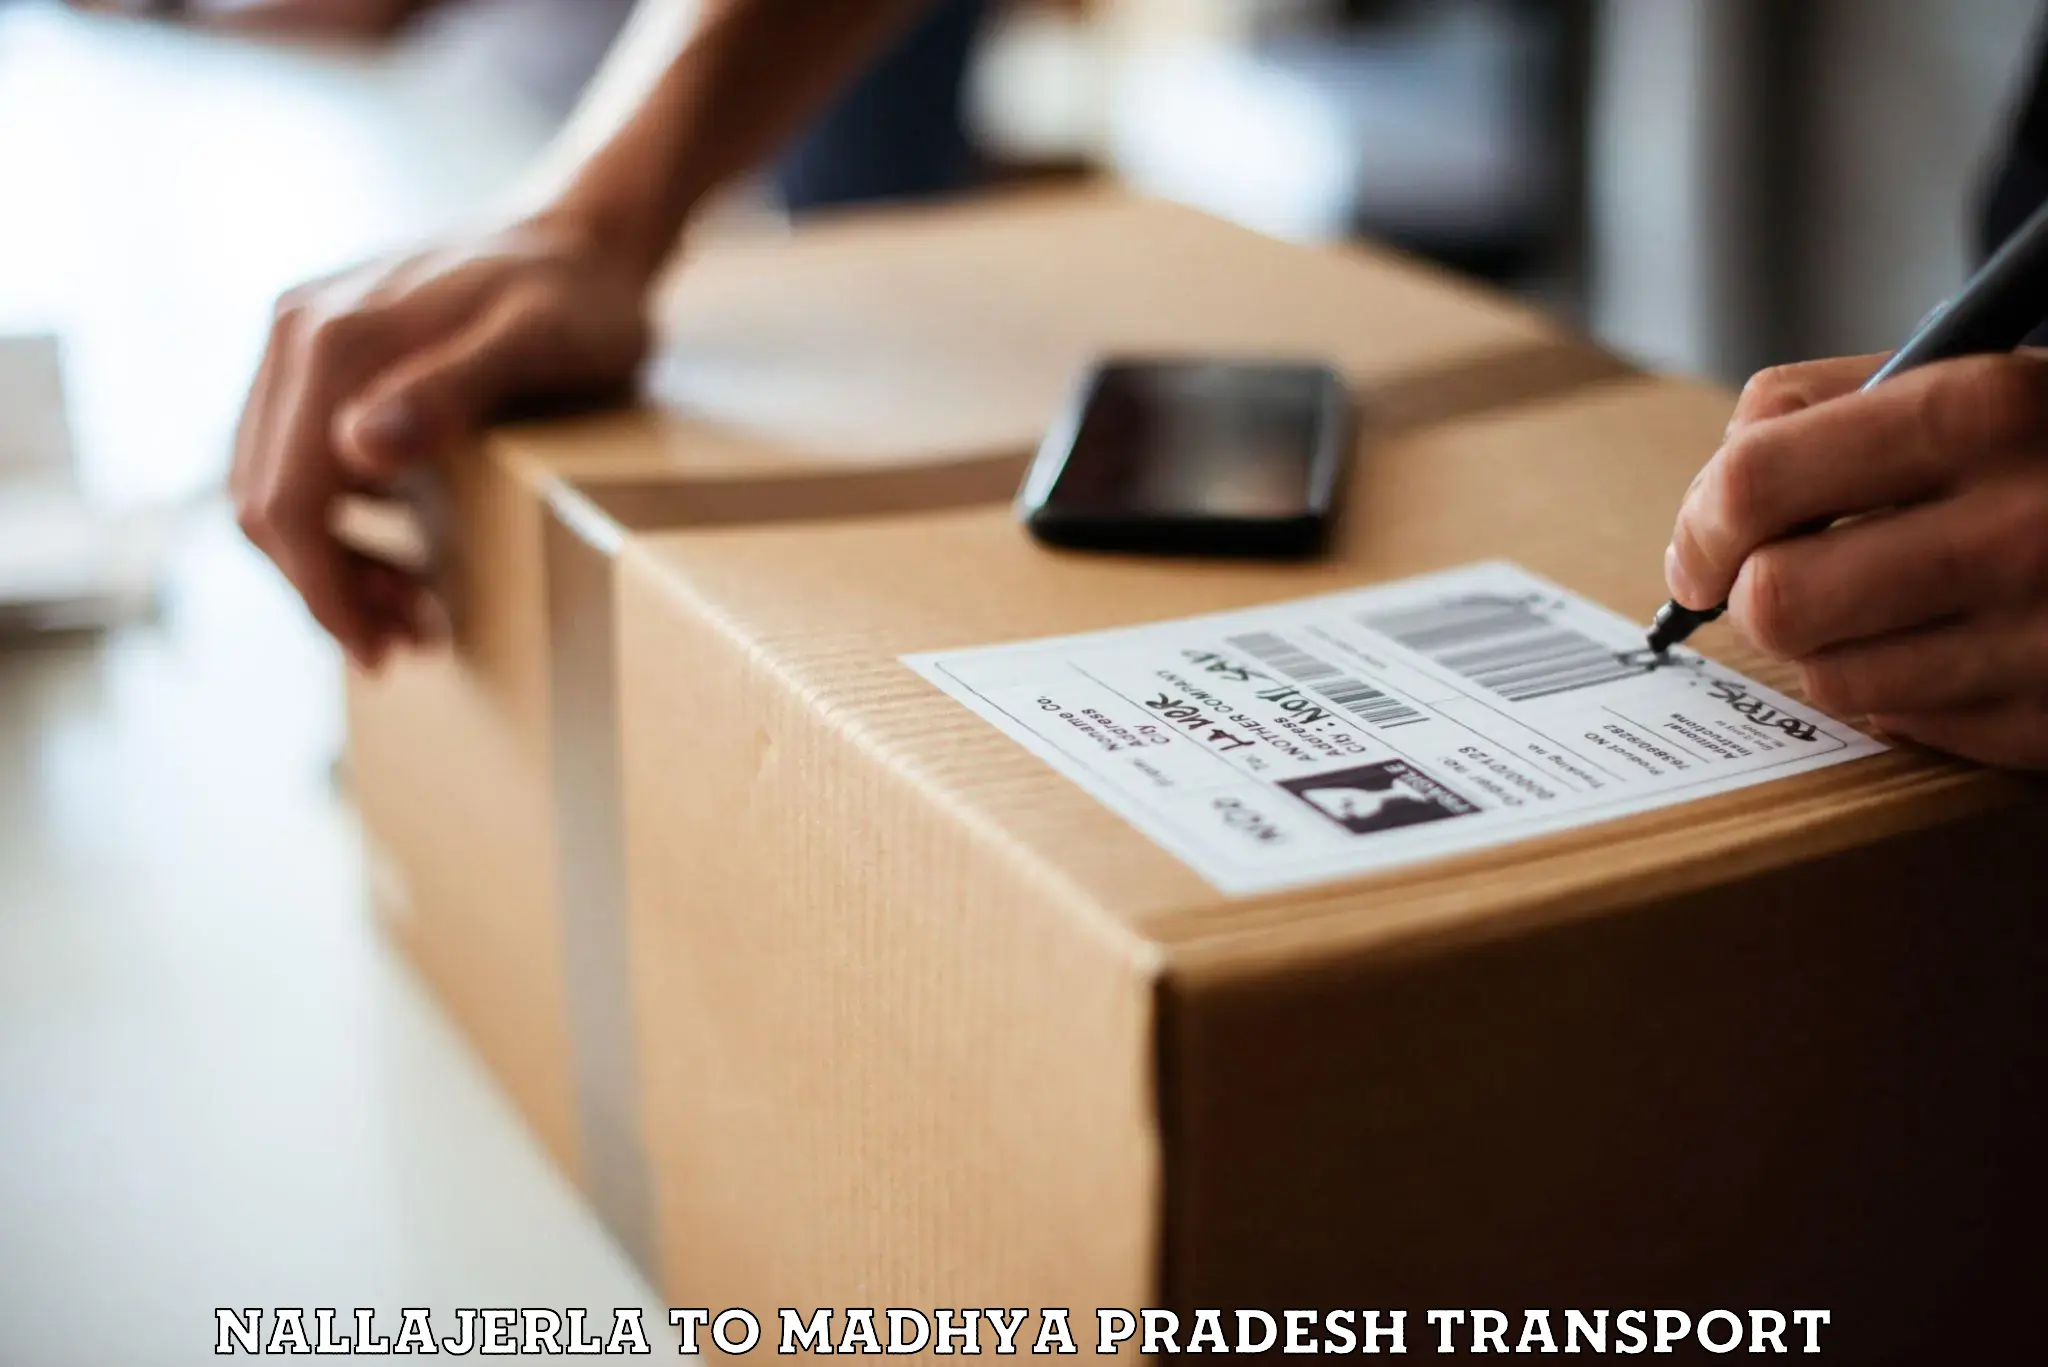 Material transport services Nallajerla to Badnagar